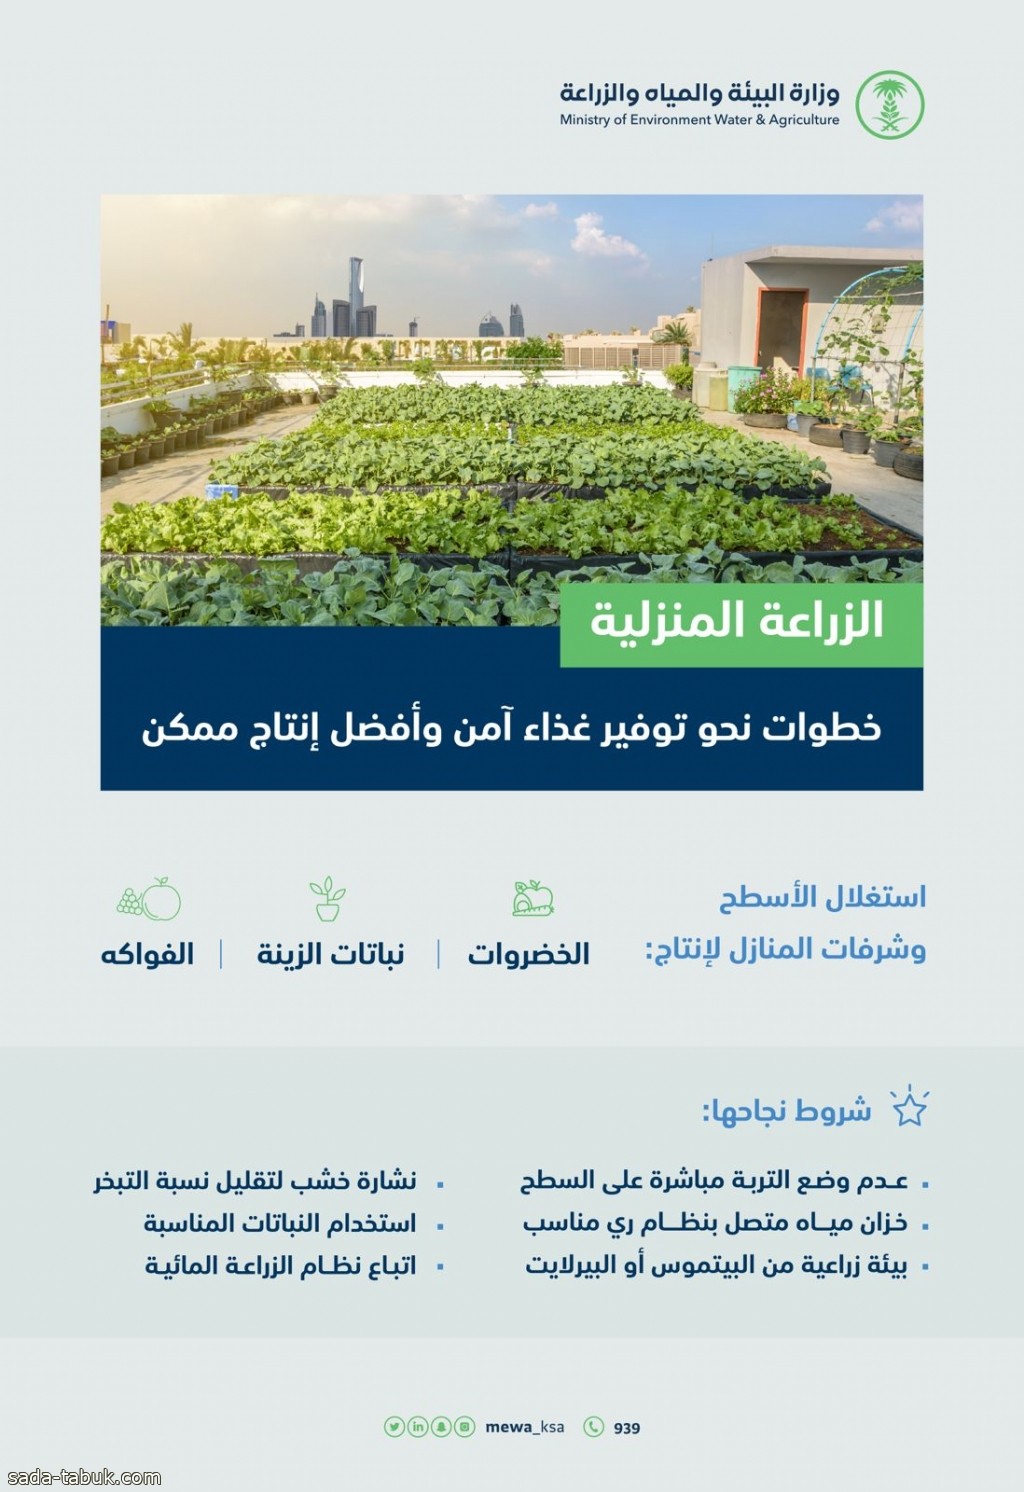 "البيئة": الزراعة المنزلية خطوة نحو تحقيق فوائد بيئية وصحية وتوفير غذاء آمن